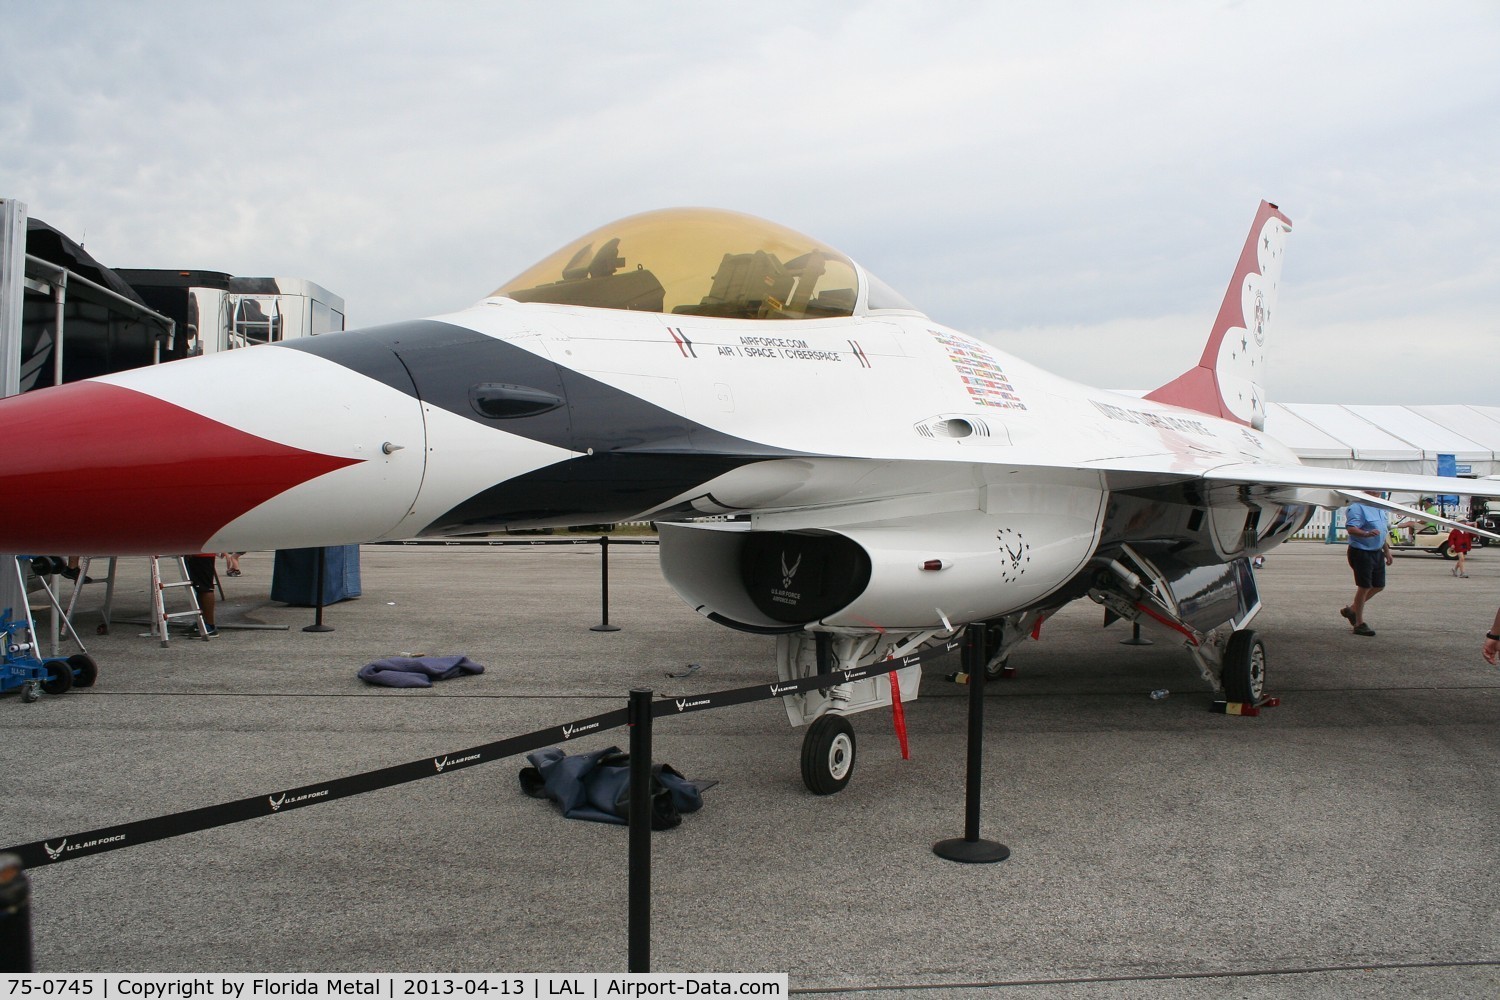 75-0745, 1977 General Dynamics YF-16A Fighting Falcon C/N 61-1, YF-16A Thunderbirds